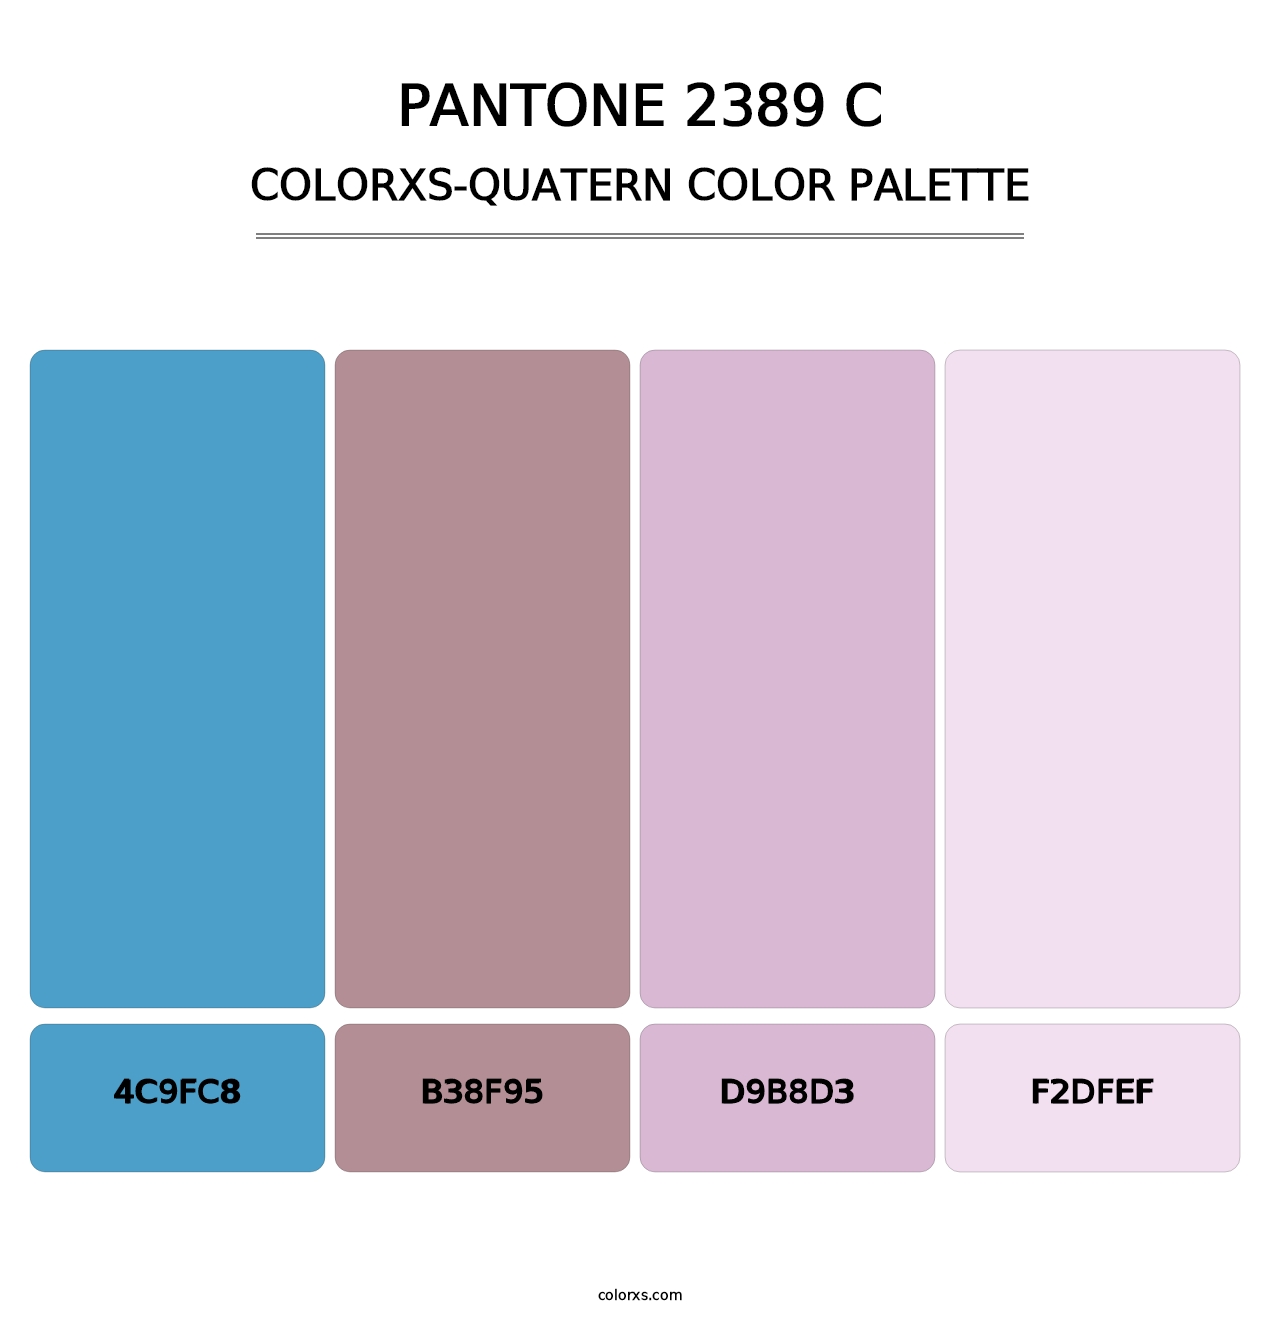 PANTONE 2389 C - Colorxs Quatern Palette